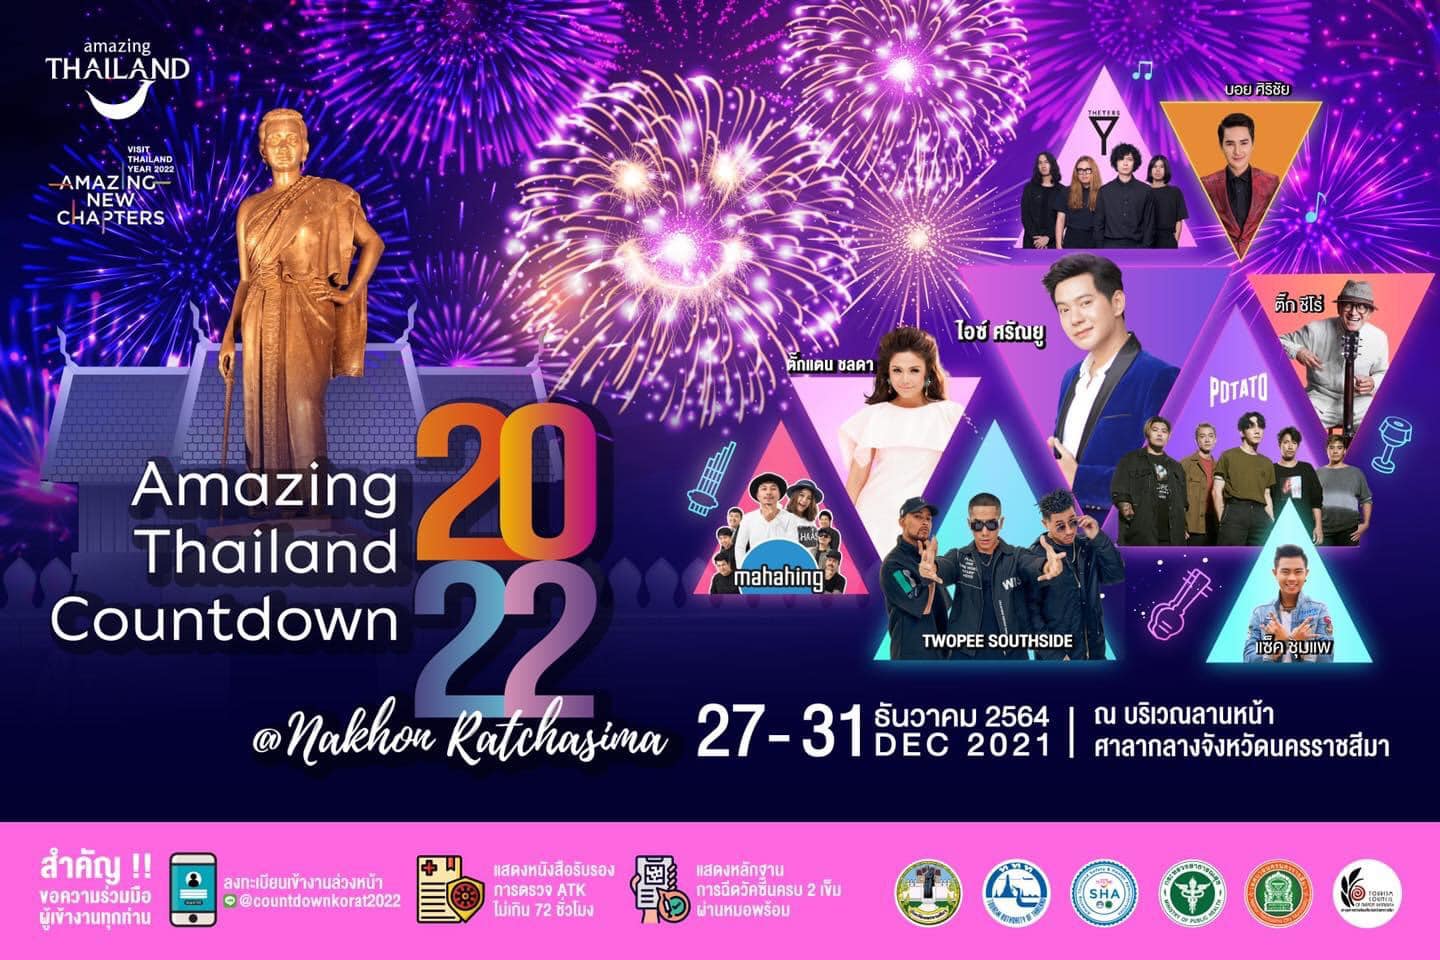 Amazing Thailand Countdown 2022 - Amazing New Chapter @Nakhon Ratchasima